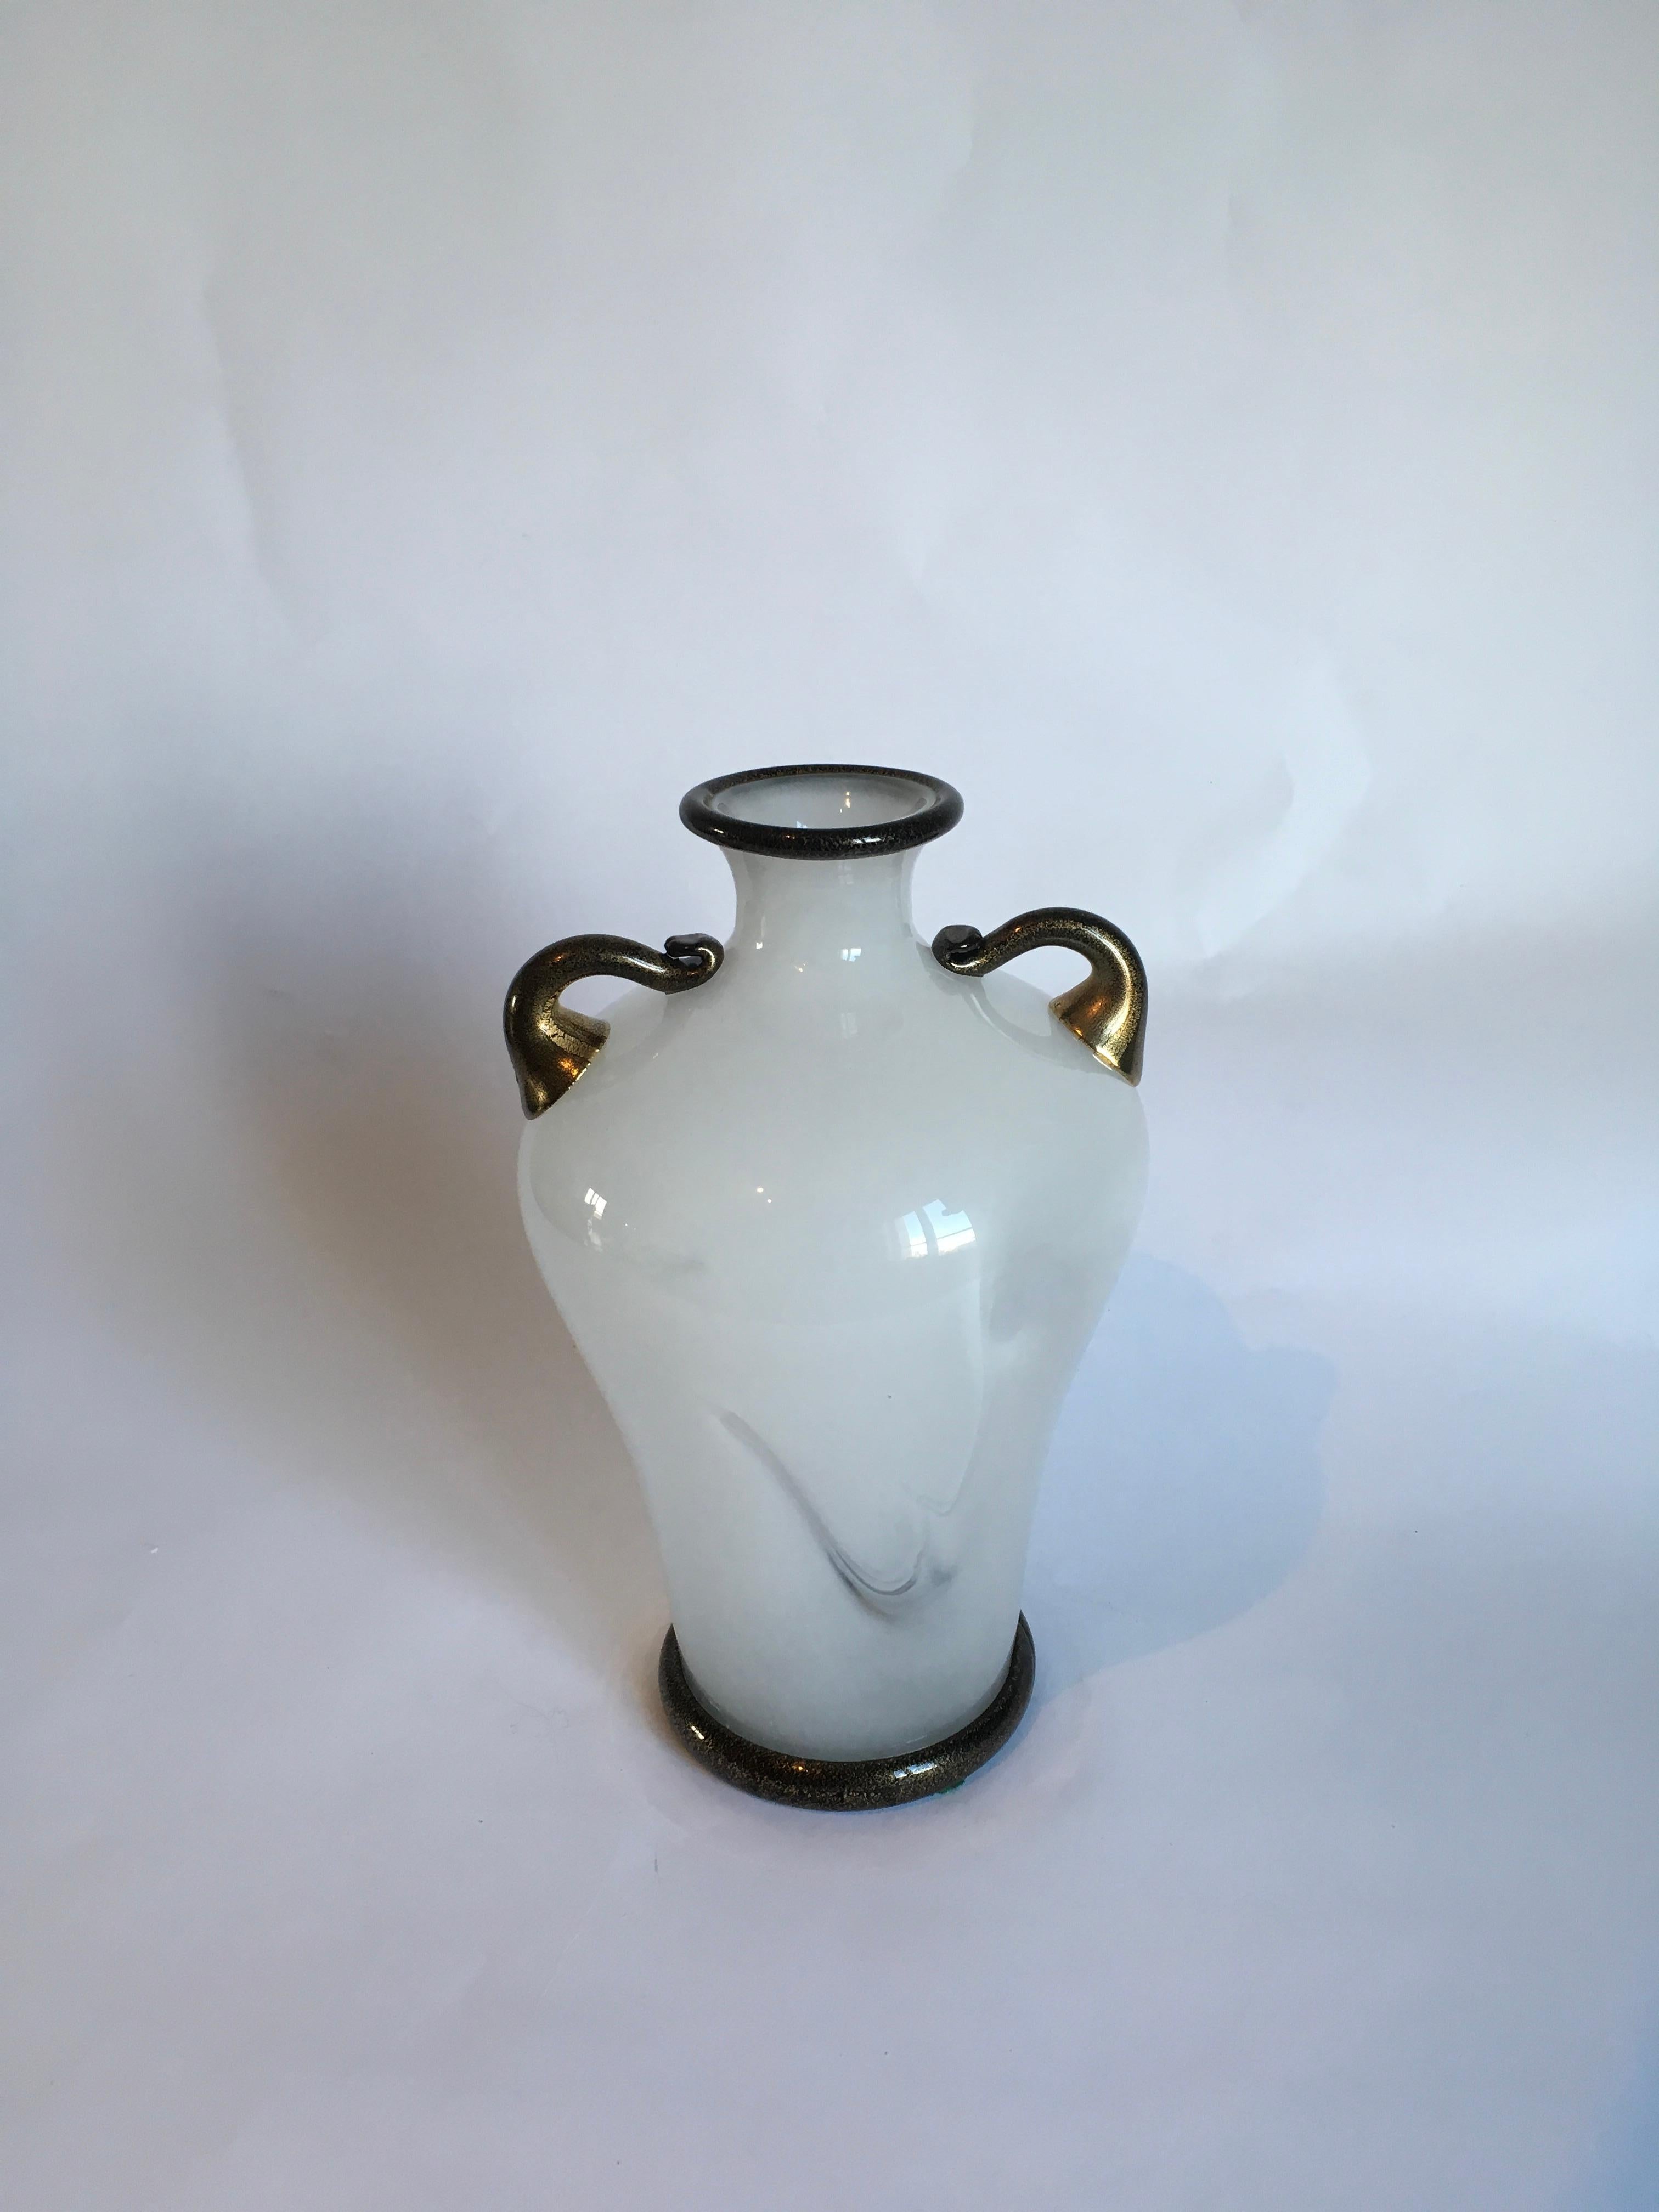 Vase aus Murano-Glas Primavera, entworfen von Ercole Barovier und hergestellt von Barovier&Toso im Jahr 1980.
Unterschrieben.